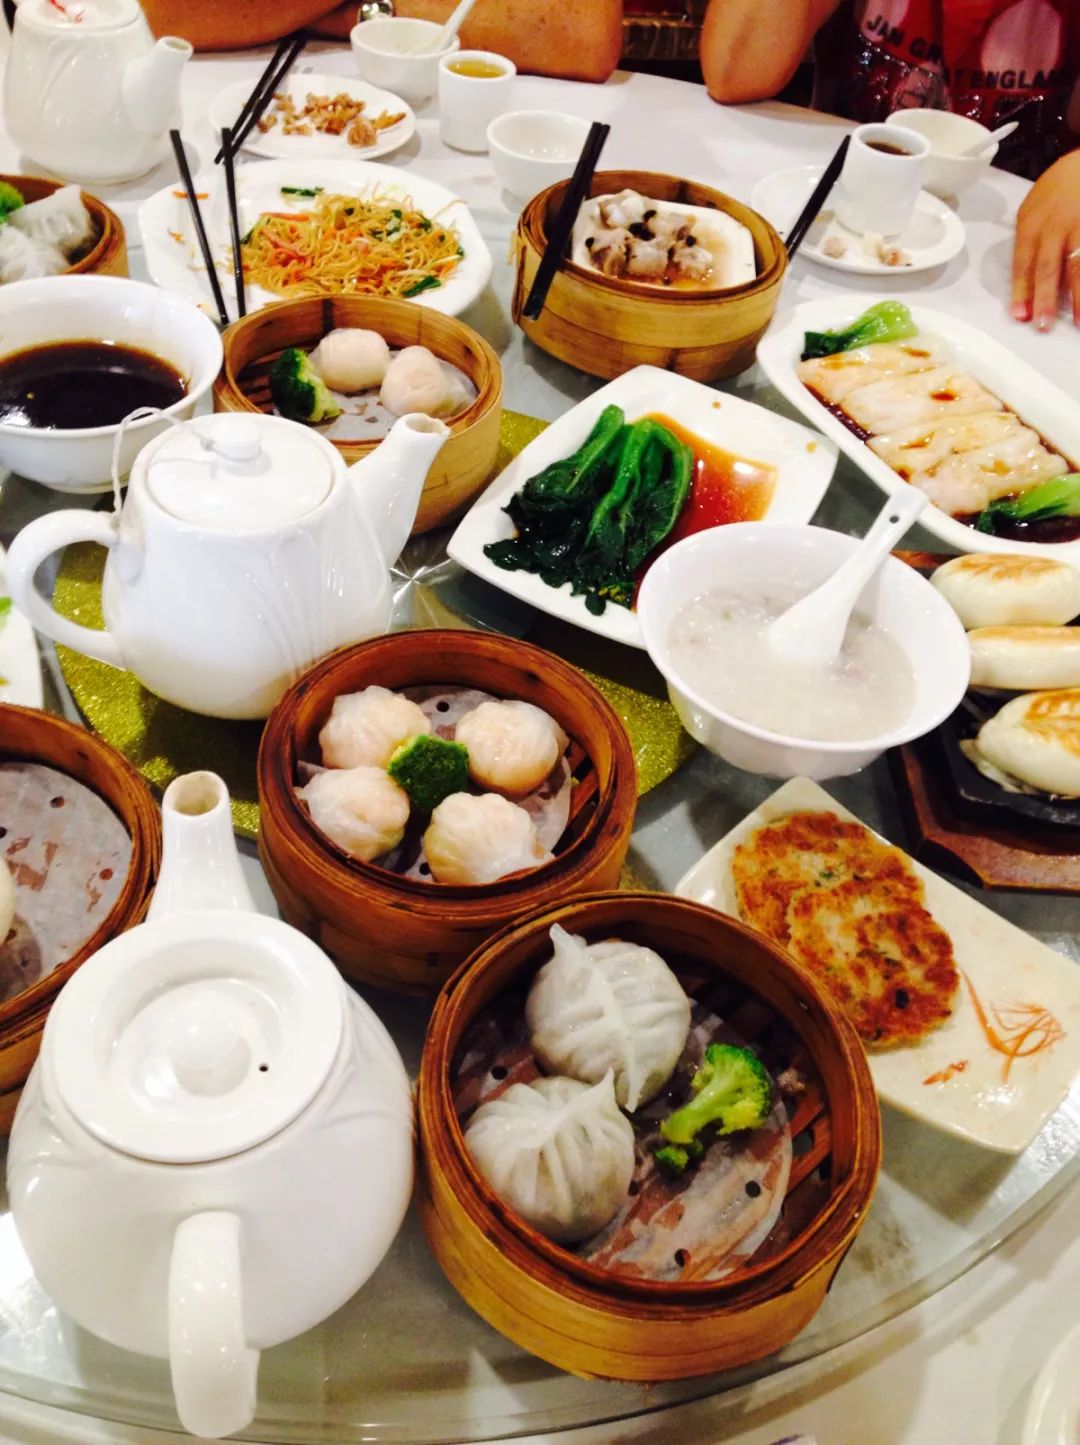 6 吃饭要配茶 广东人也十分爱喝茶 就连早餐都叫作"早茶" 而且去粤菜